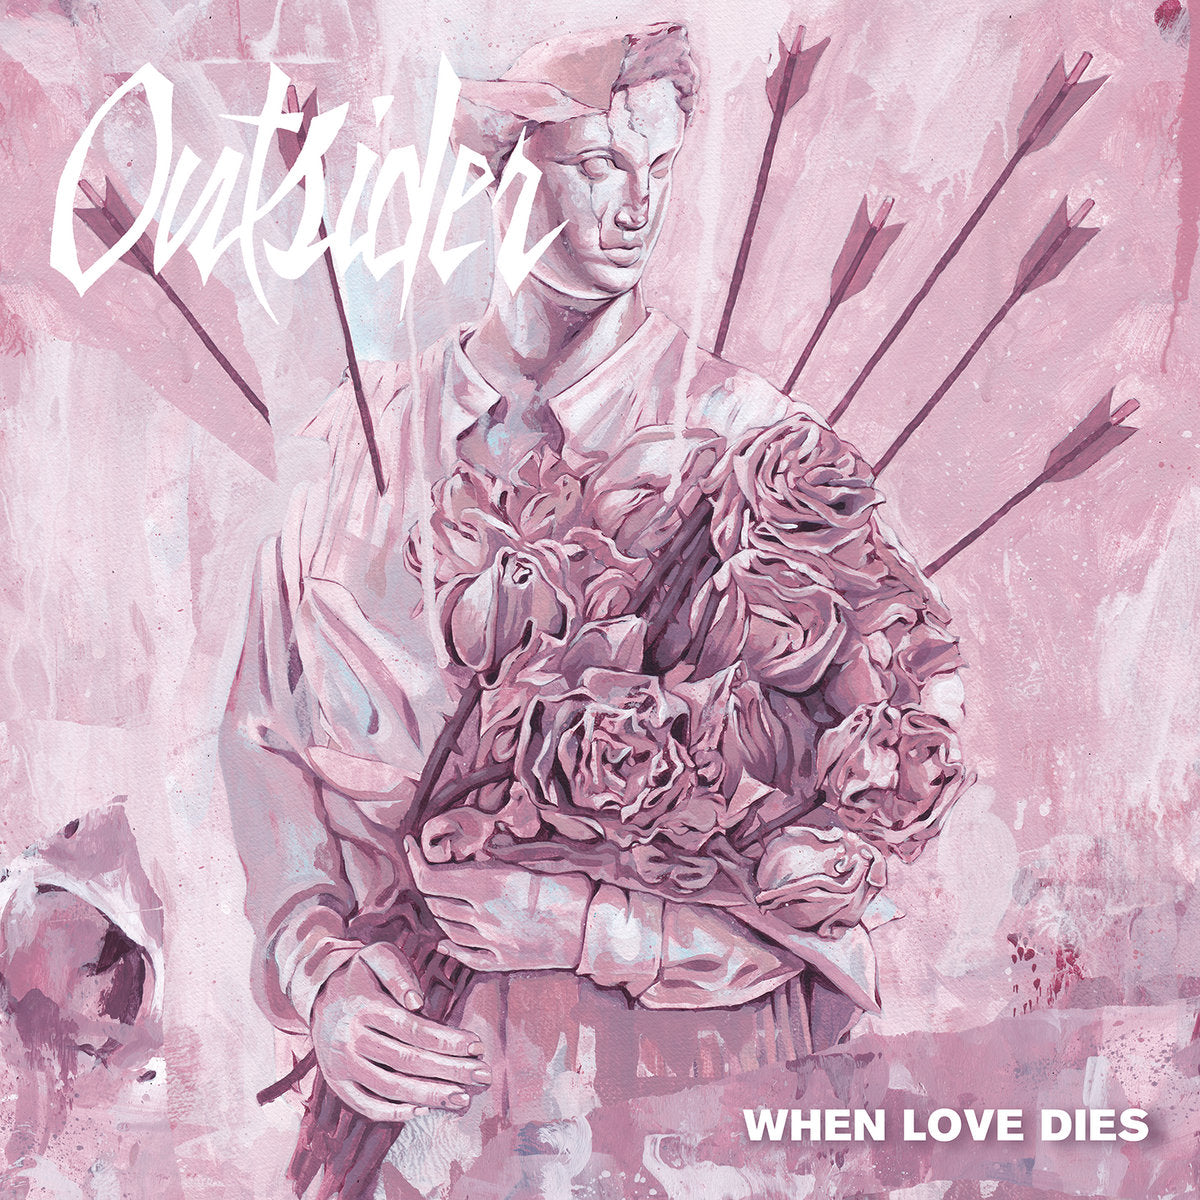 OUTSIDER "When Love Dies" 7"